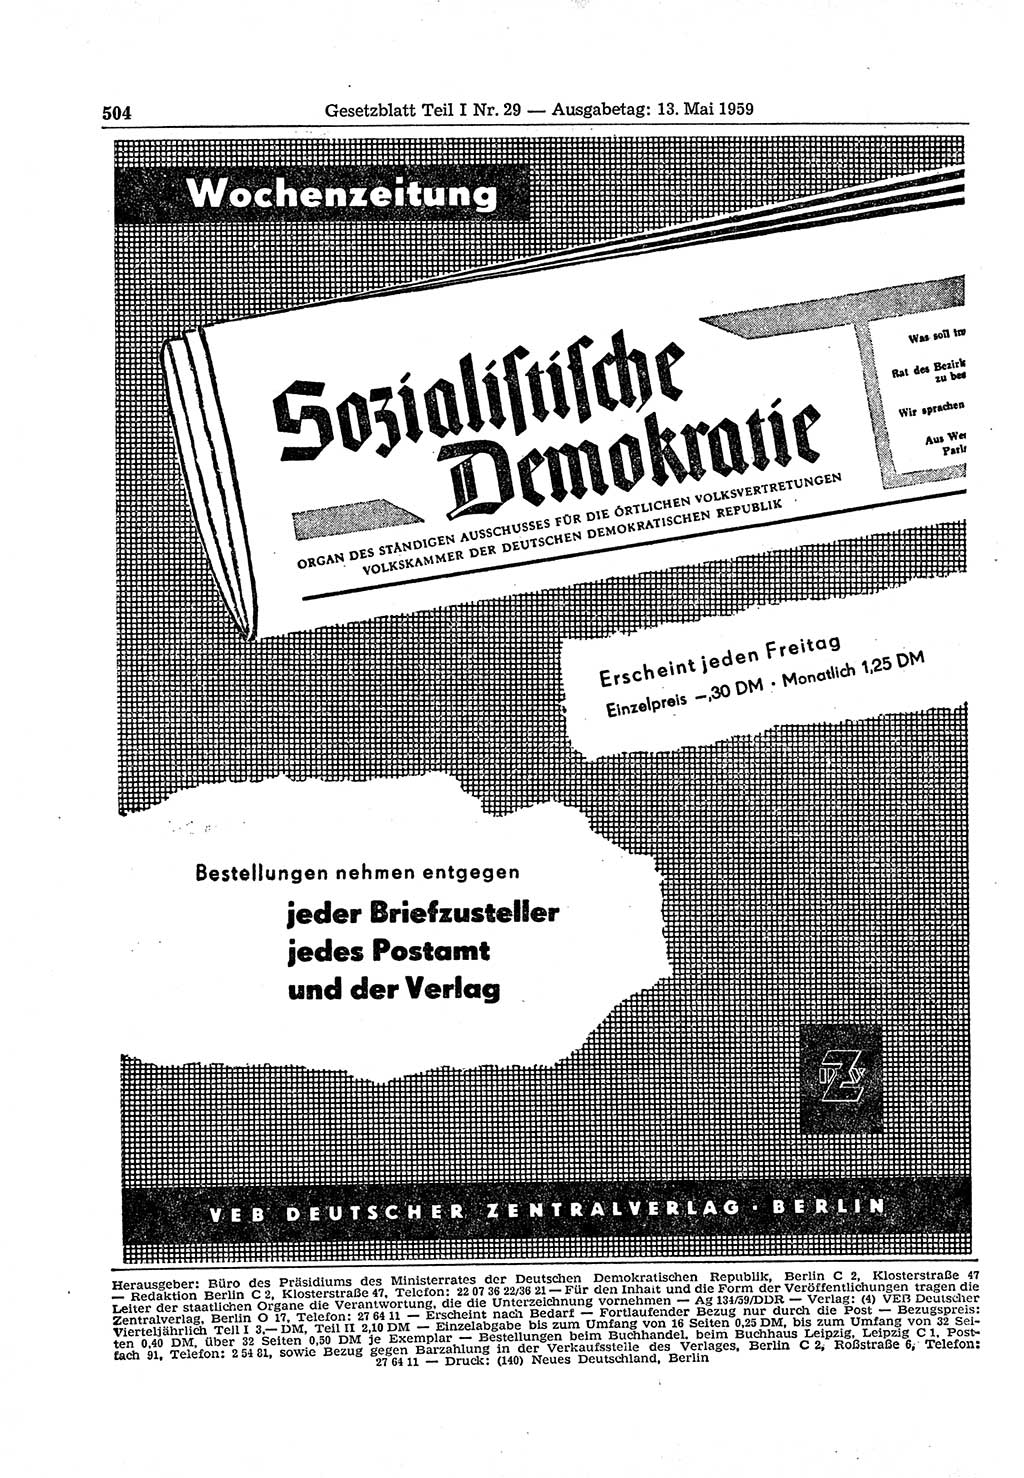 Gesetzblatt (GBl.) der Deutschen Demokratischen Republik (DDR) Teil Ⅰ 1959, Seite 504 (GBl. DDR Ⅰ 1959, S. 504)